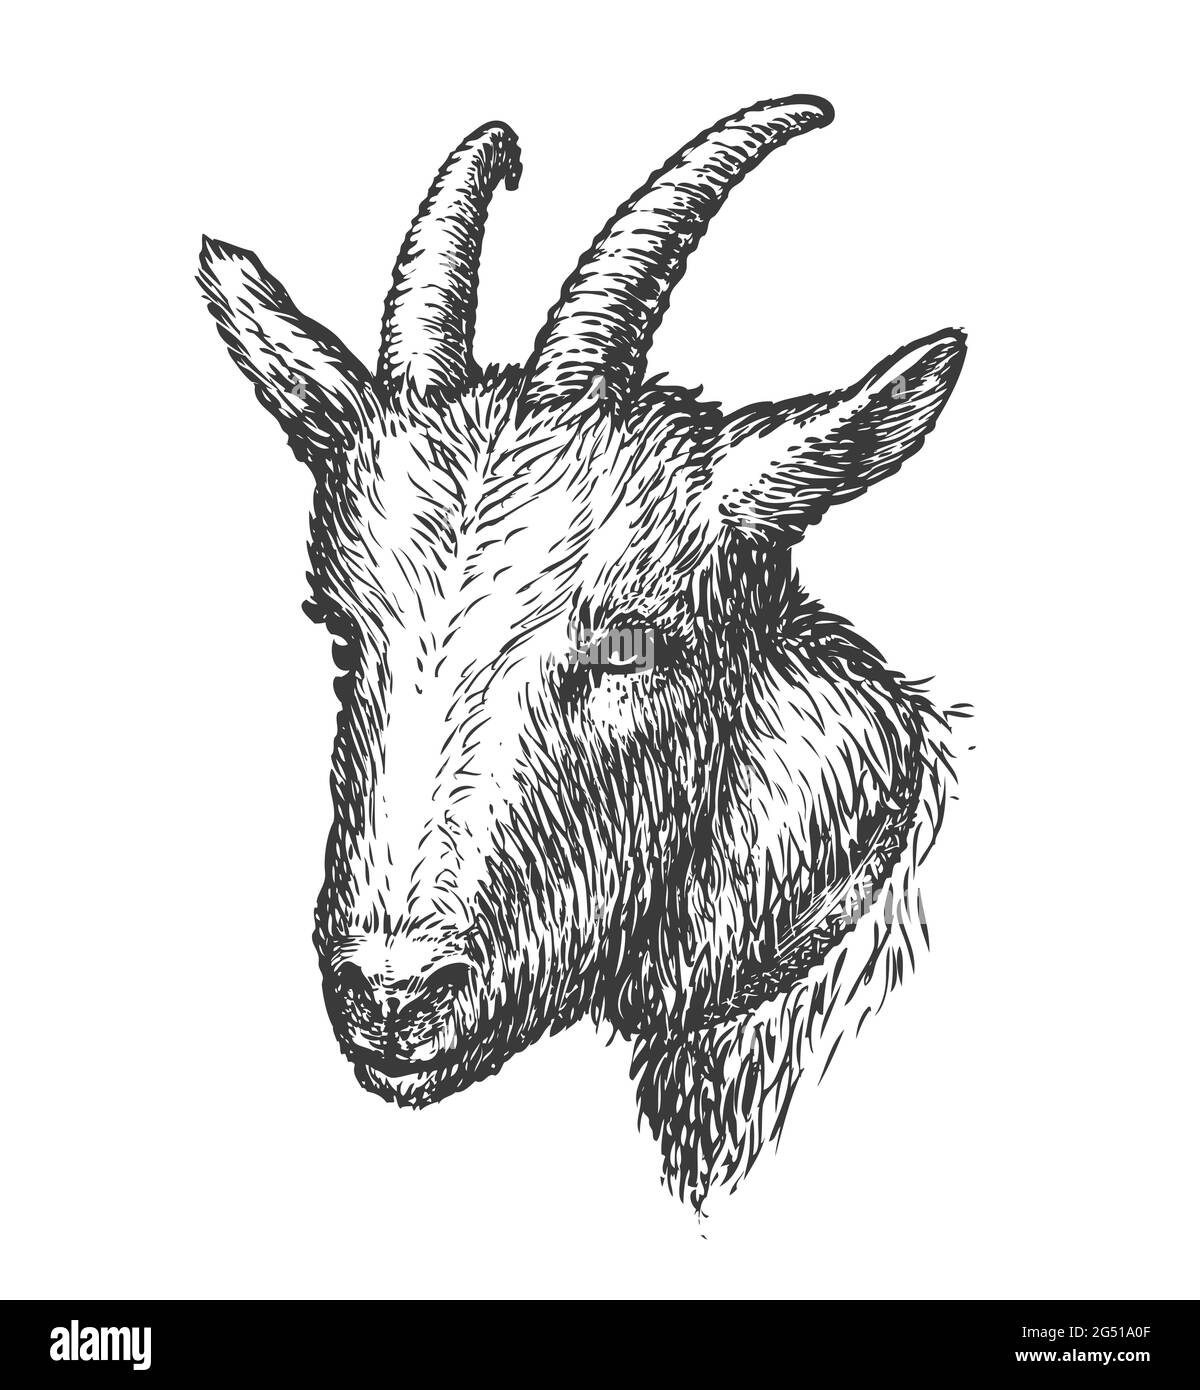 Disegnata testa di capra. Illustrazione vettoriale dell'animale da allevamento Illustrazione Vettoriale